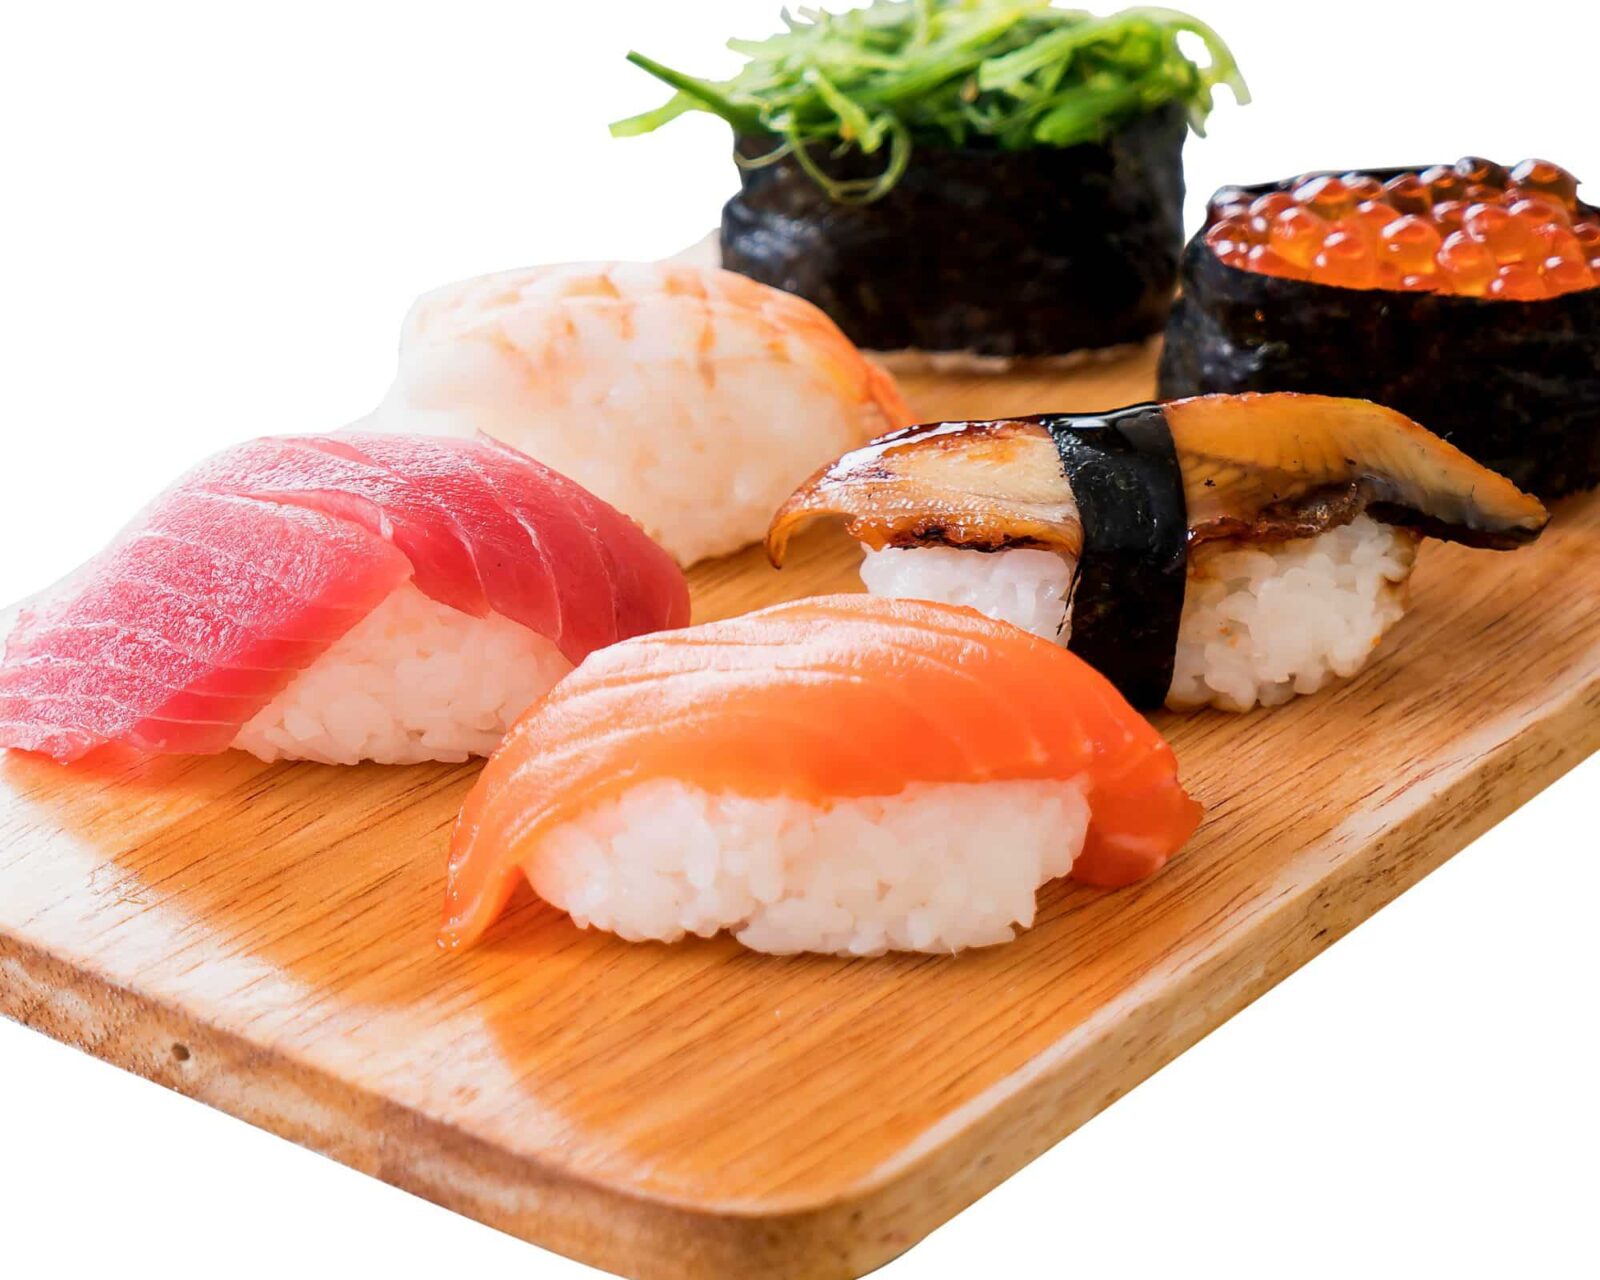 Die verborgene Kunst hinter jedem Sushi-Stück